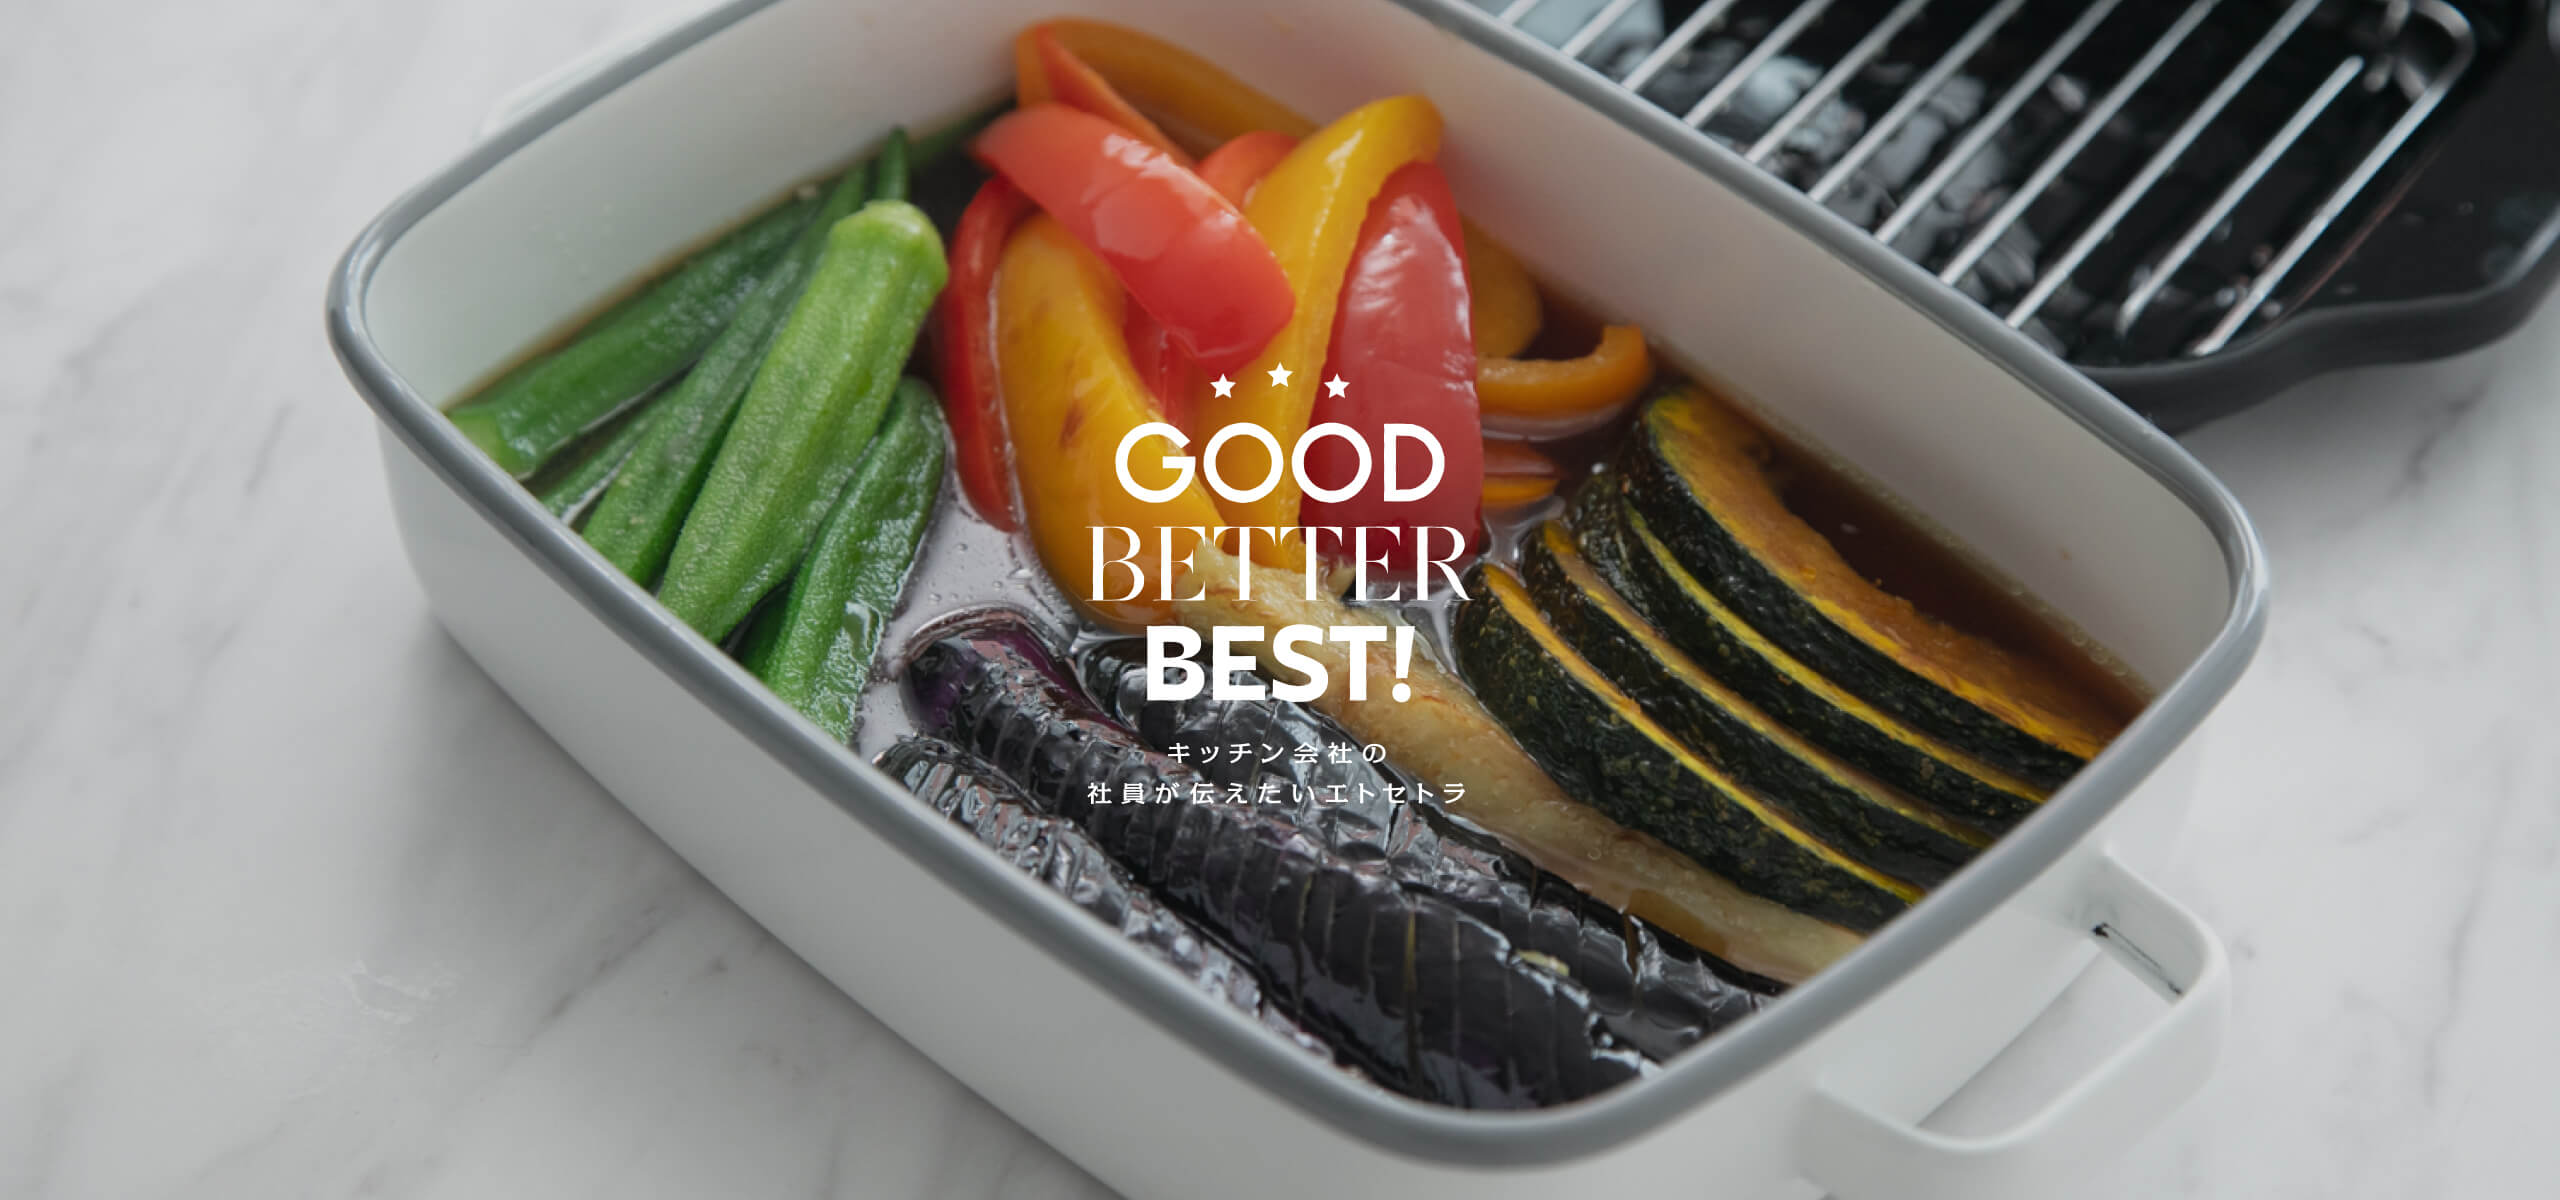 「夏野菜」を美味しく食べよう！
おすすめの道具 4選